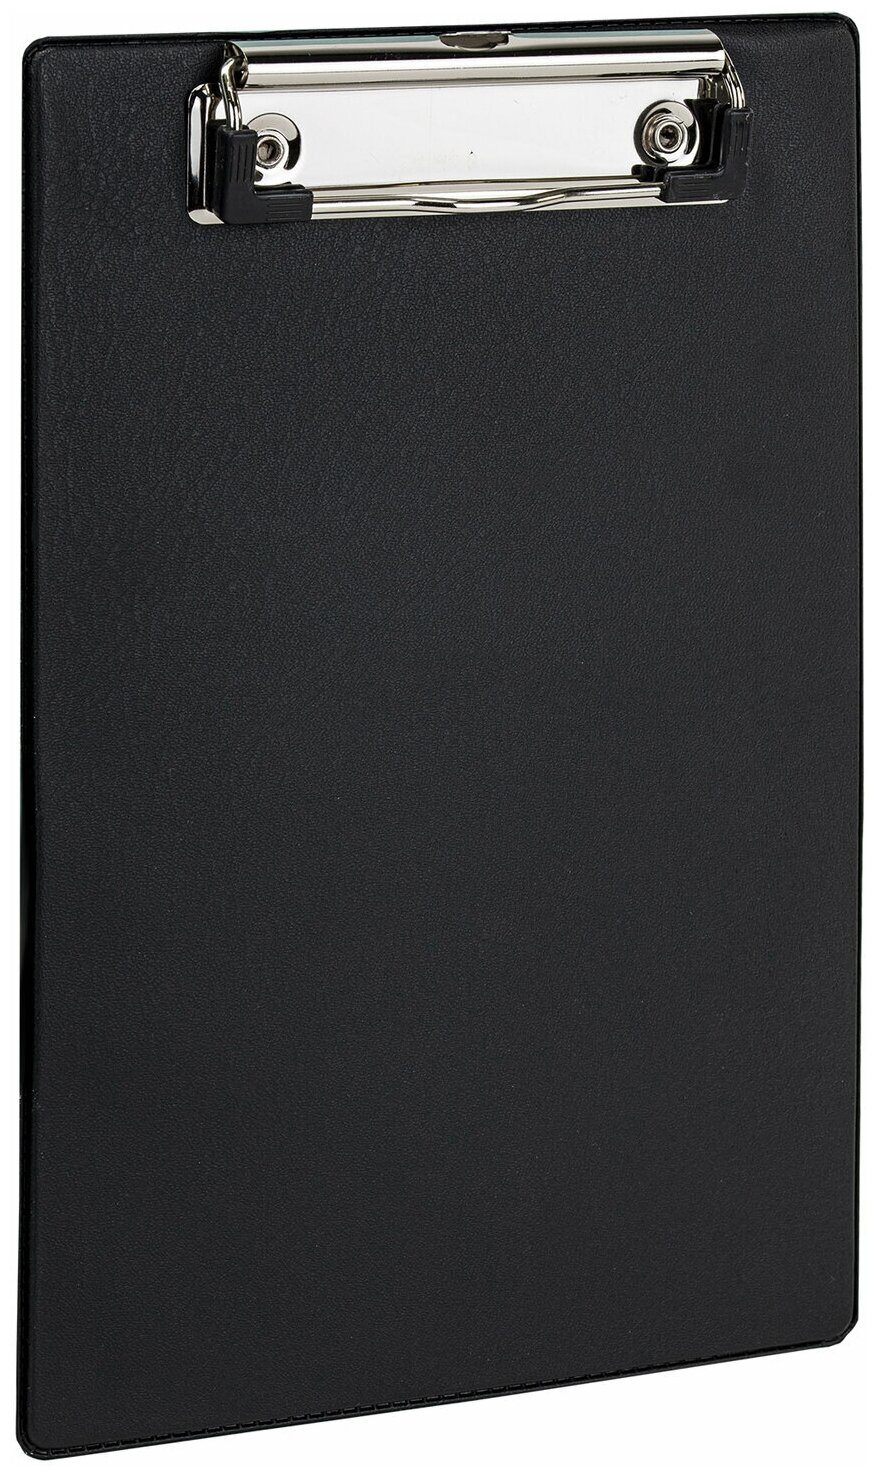 Доска-планшет Staff малый формат, 158х230 мм, А5, с прижимом, картон, ПВХ, черная (229556)